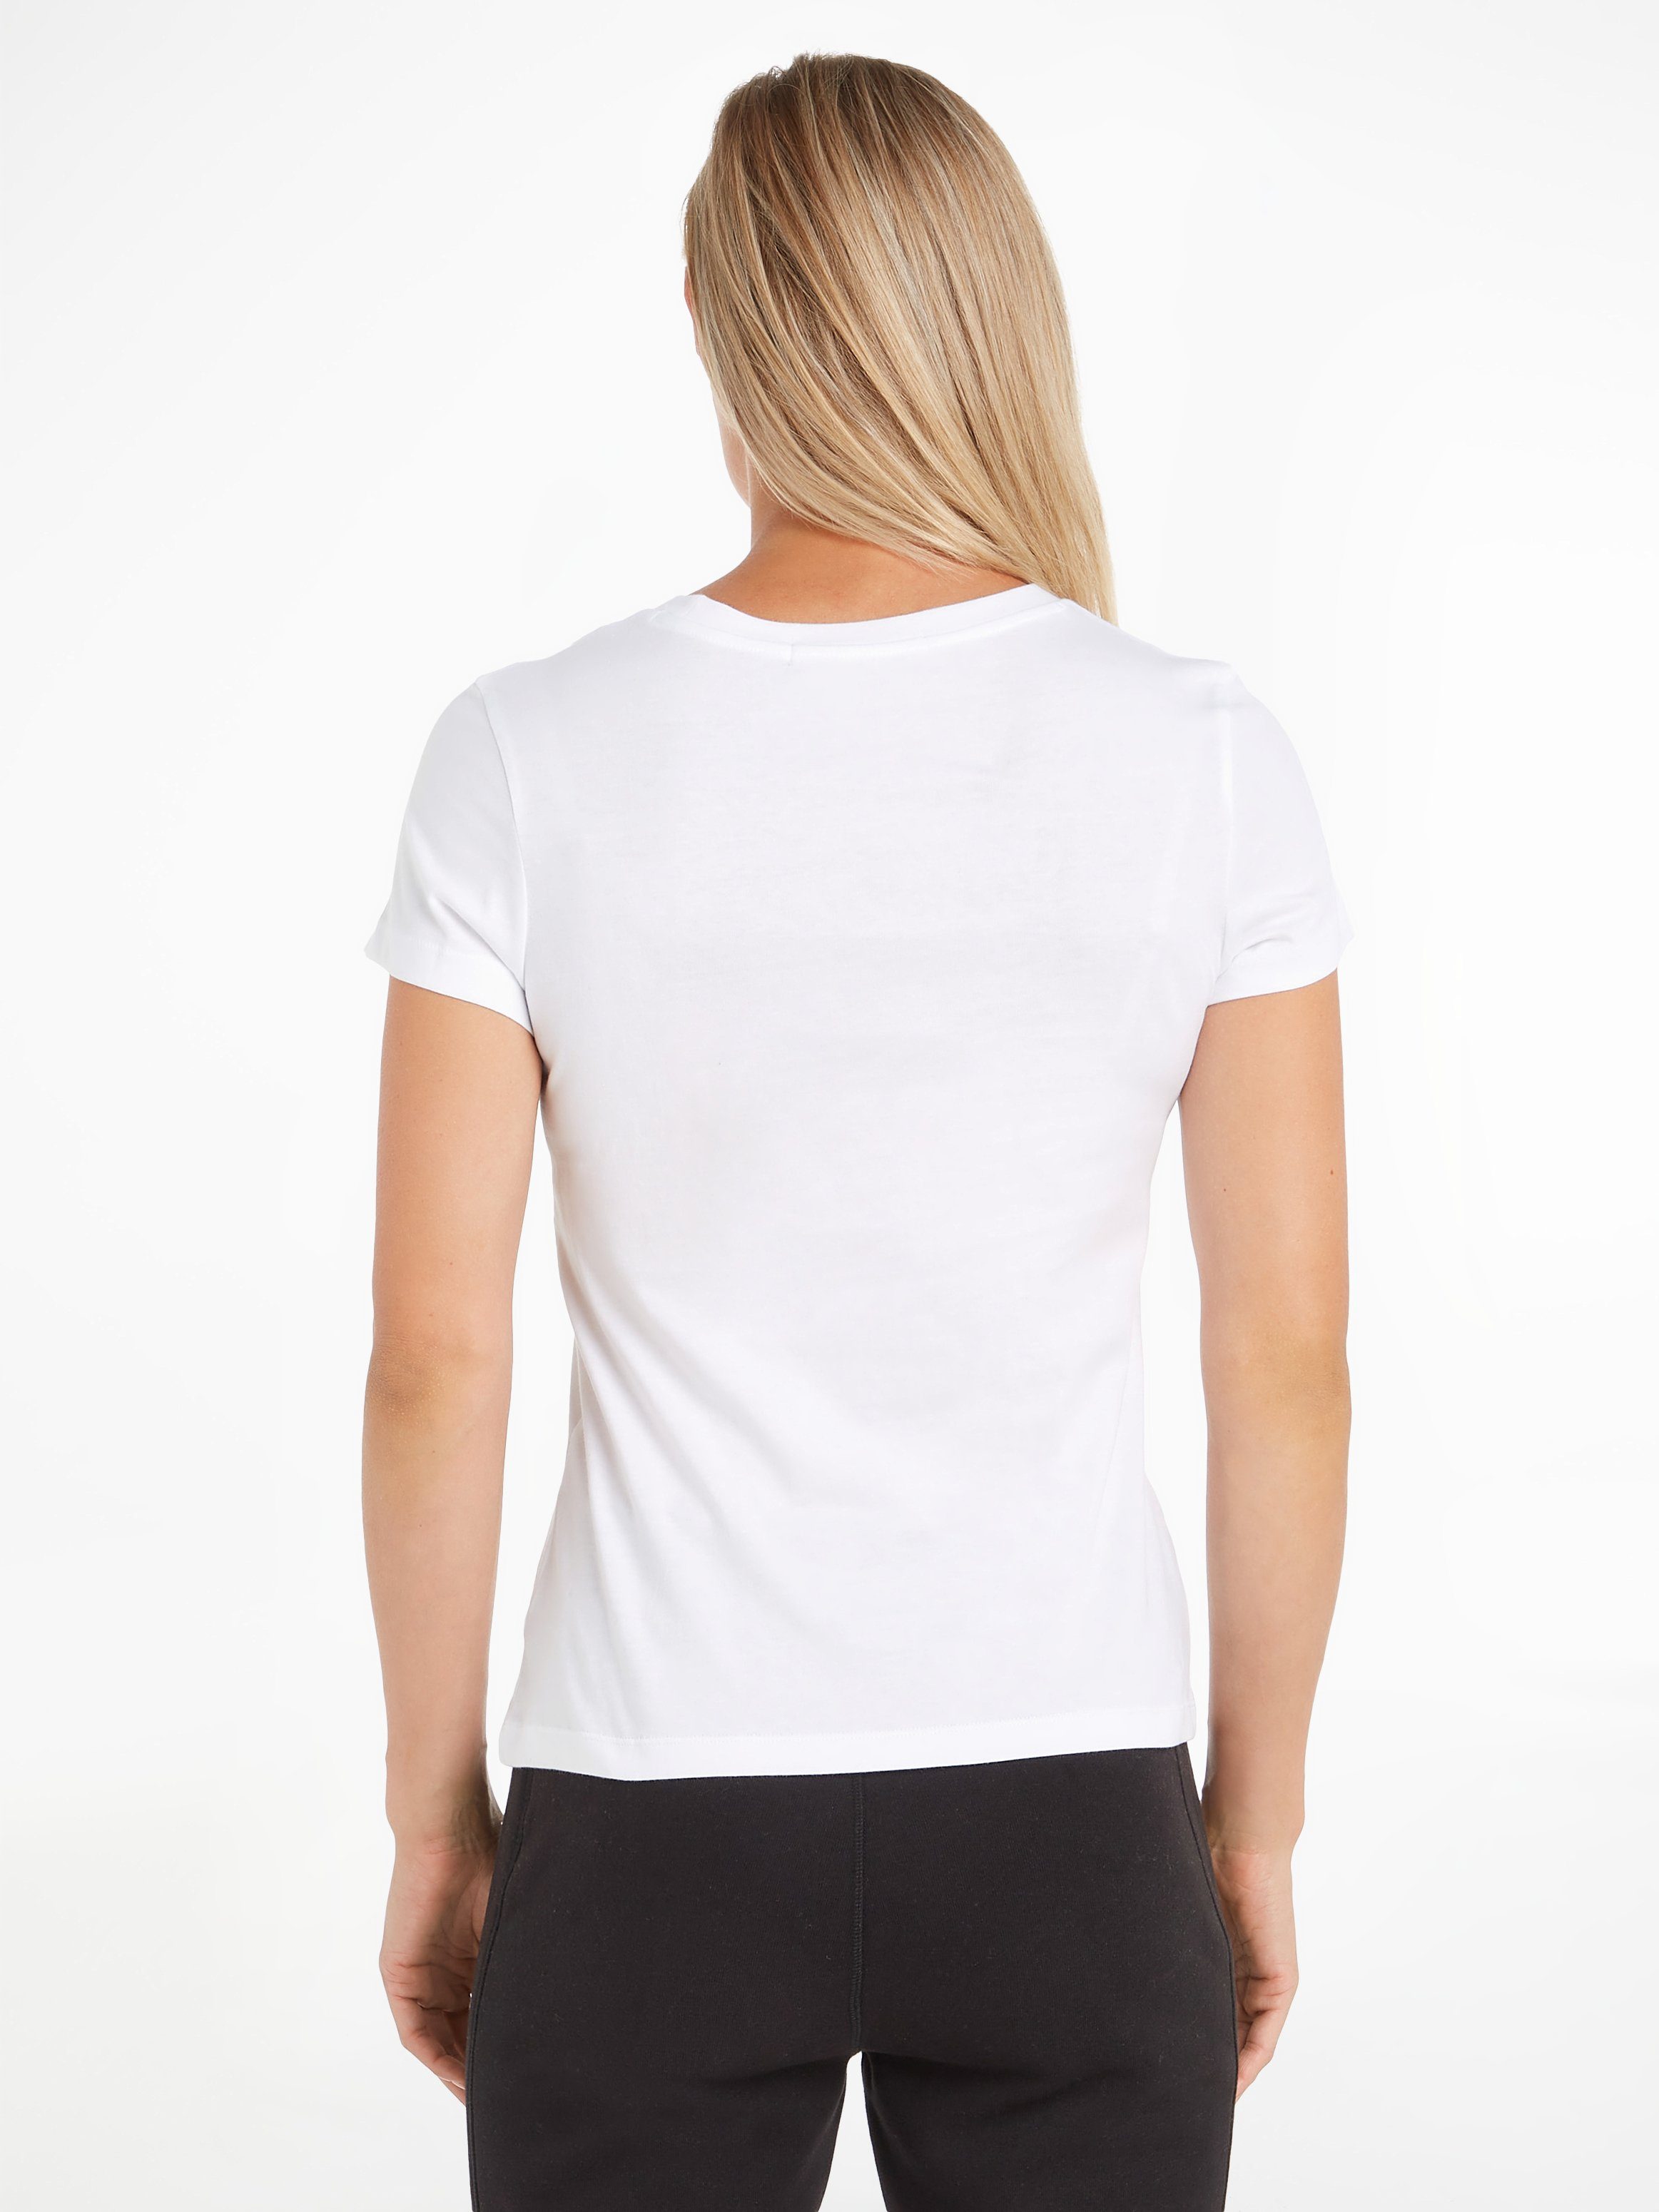 CK-Logoschriftzug TEE SLIM mit FIT Bright T-Shirt White Jeans INSTIT Klein Calvin LOGO CORE